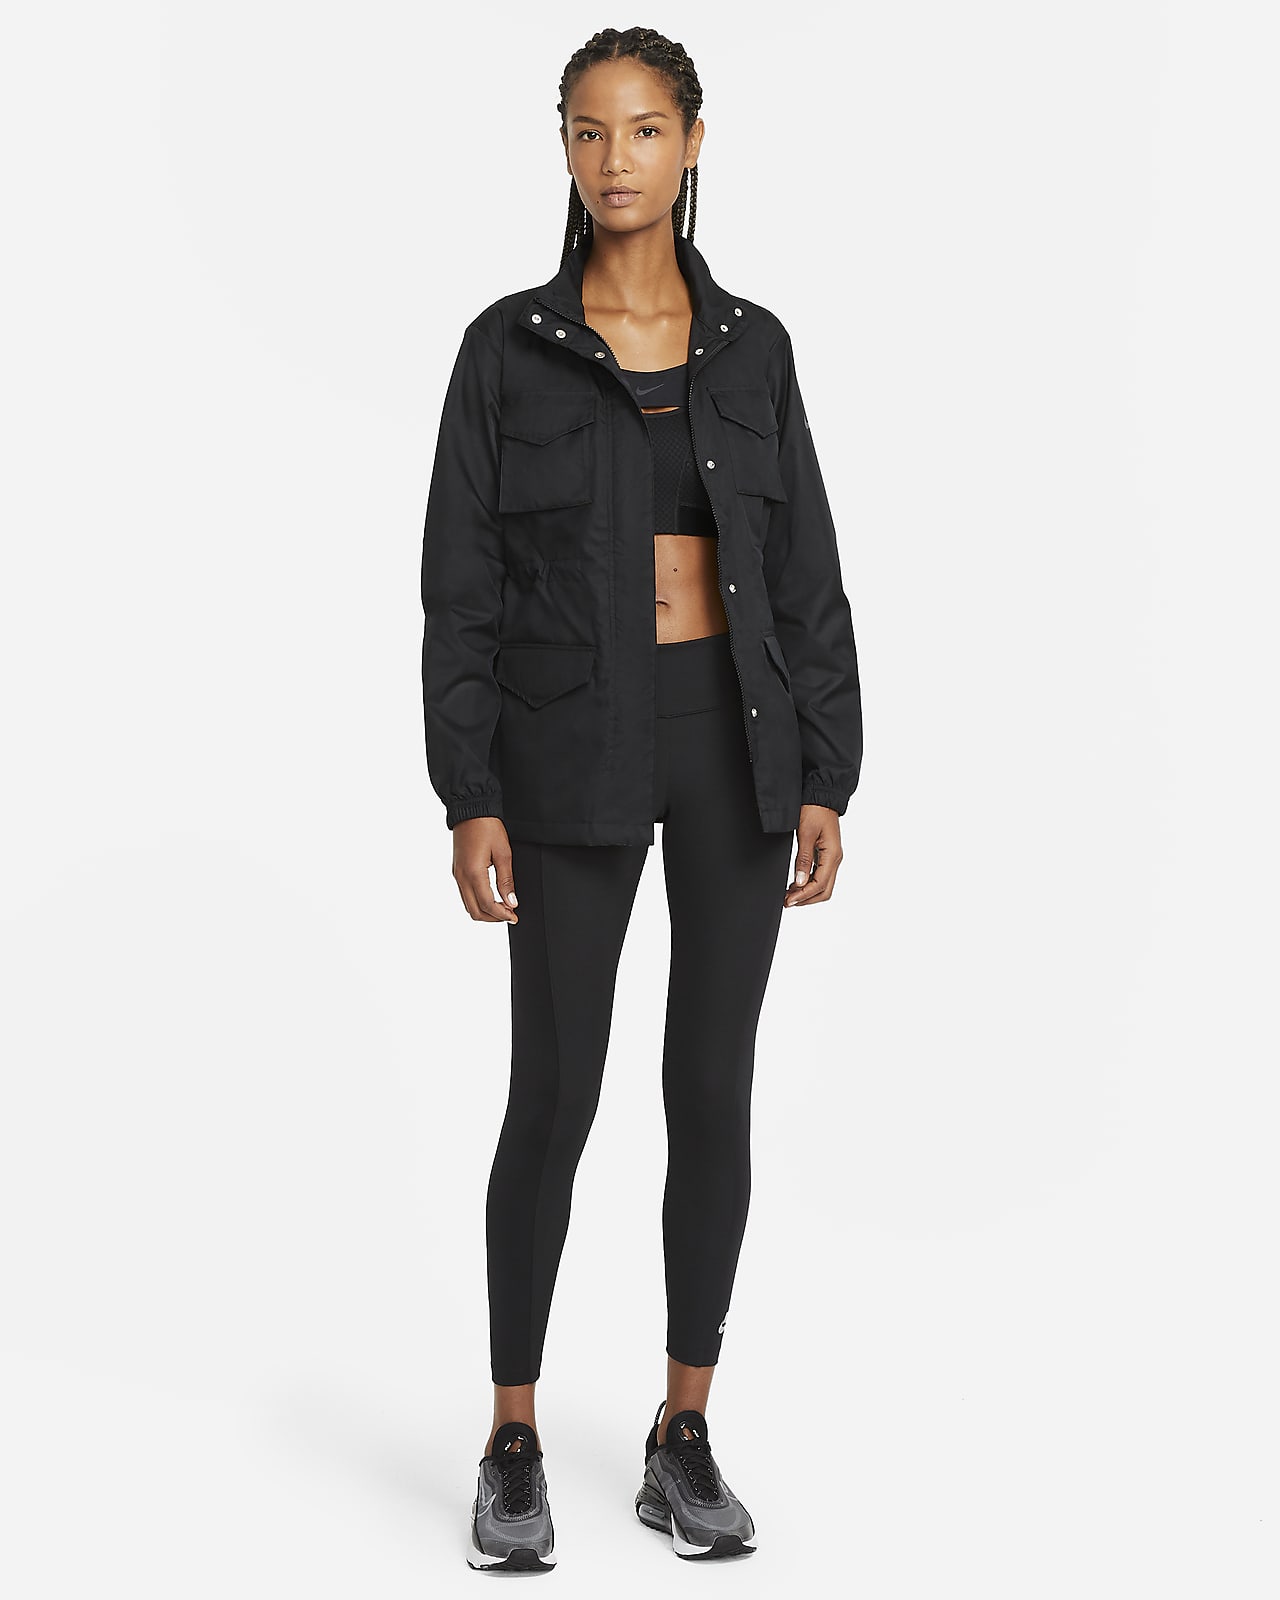 Nike Sportswear Women's M65 Woven Jacket